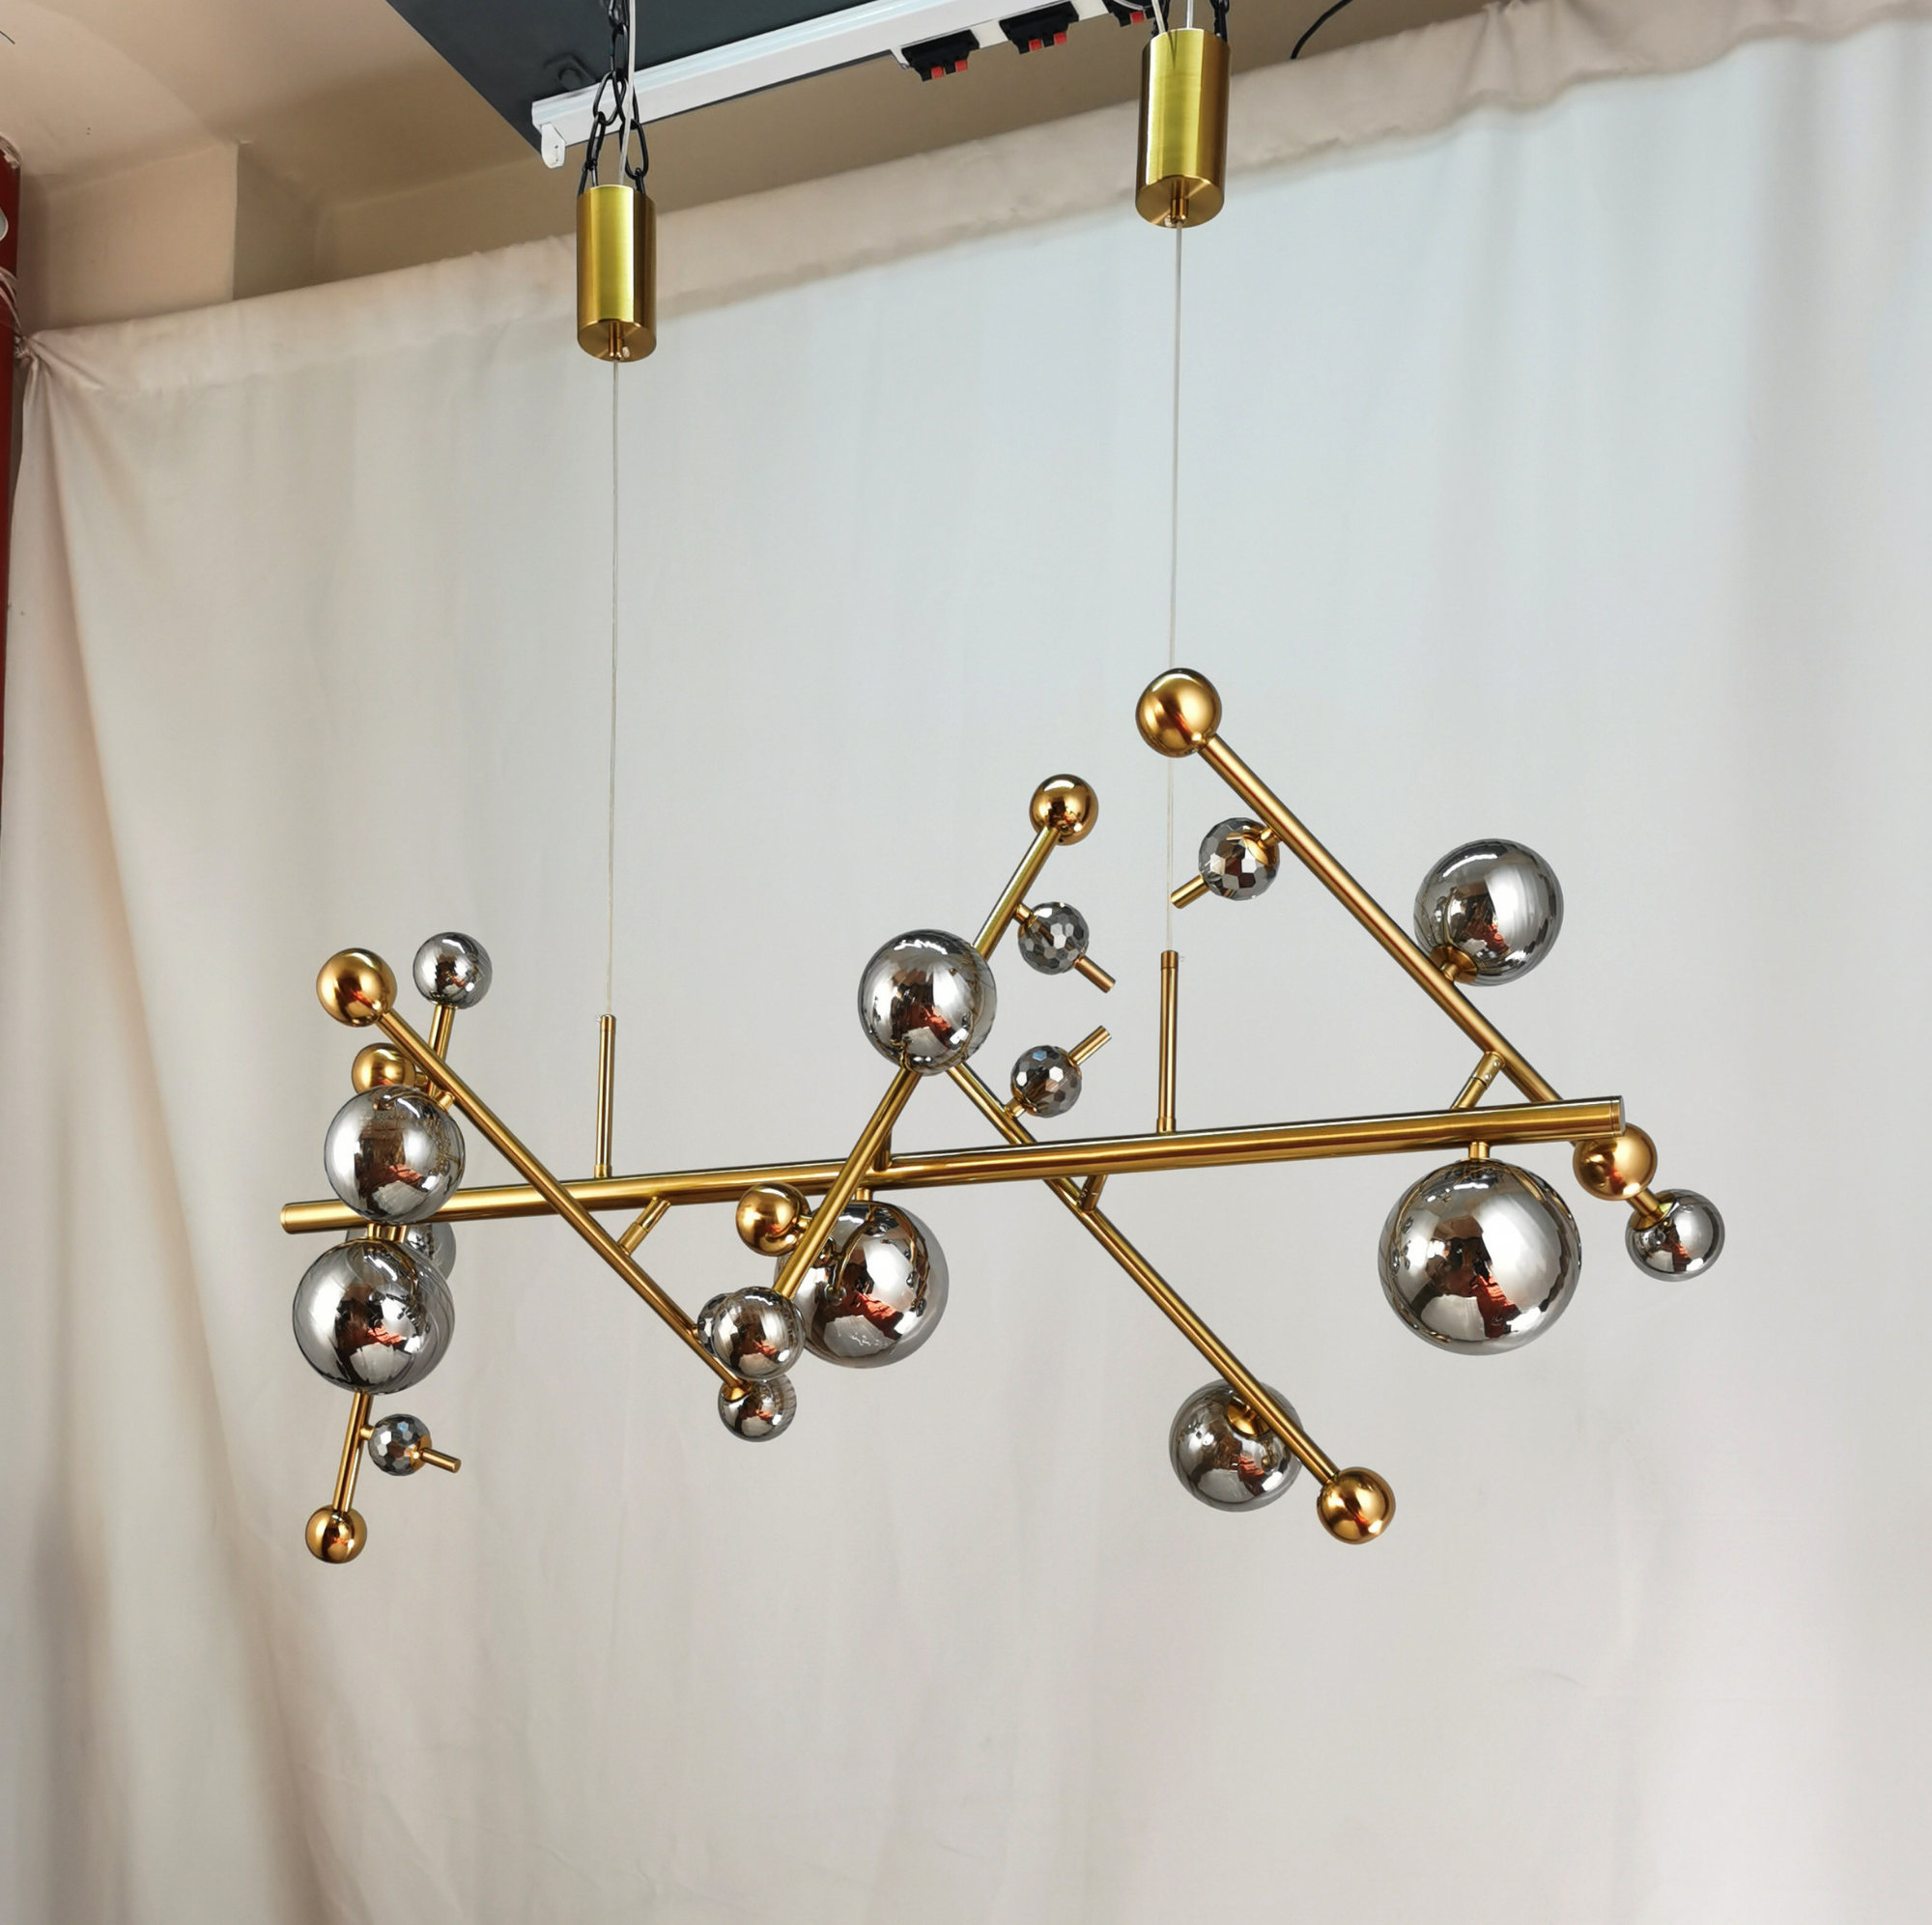 A1925/13 Modern Gold Glass Ash LED Chandelier Lighting With 13 Somkey Gray Ball For Living Room, Restaurant, Bar, Hotel, Living room